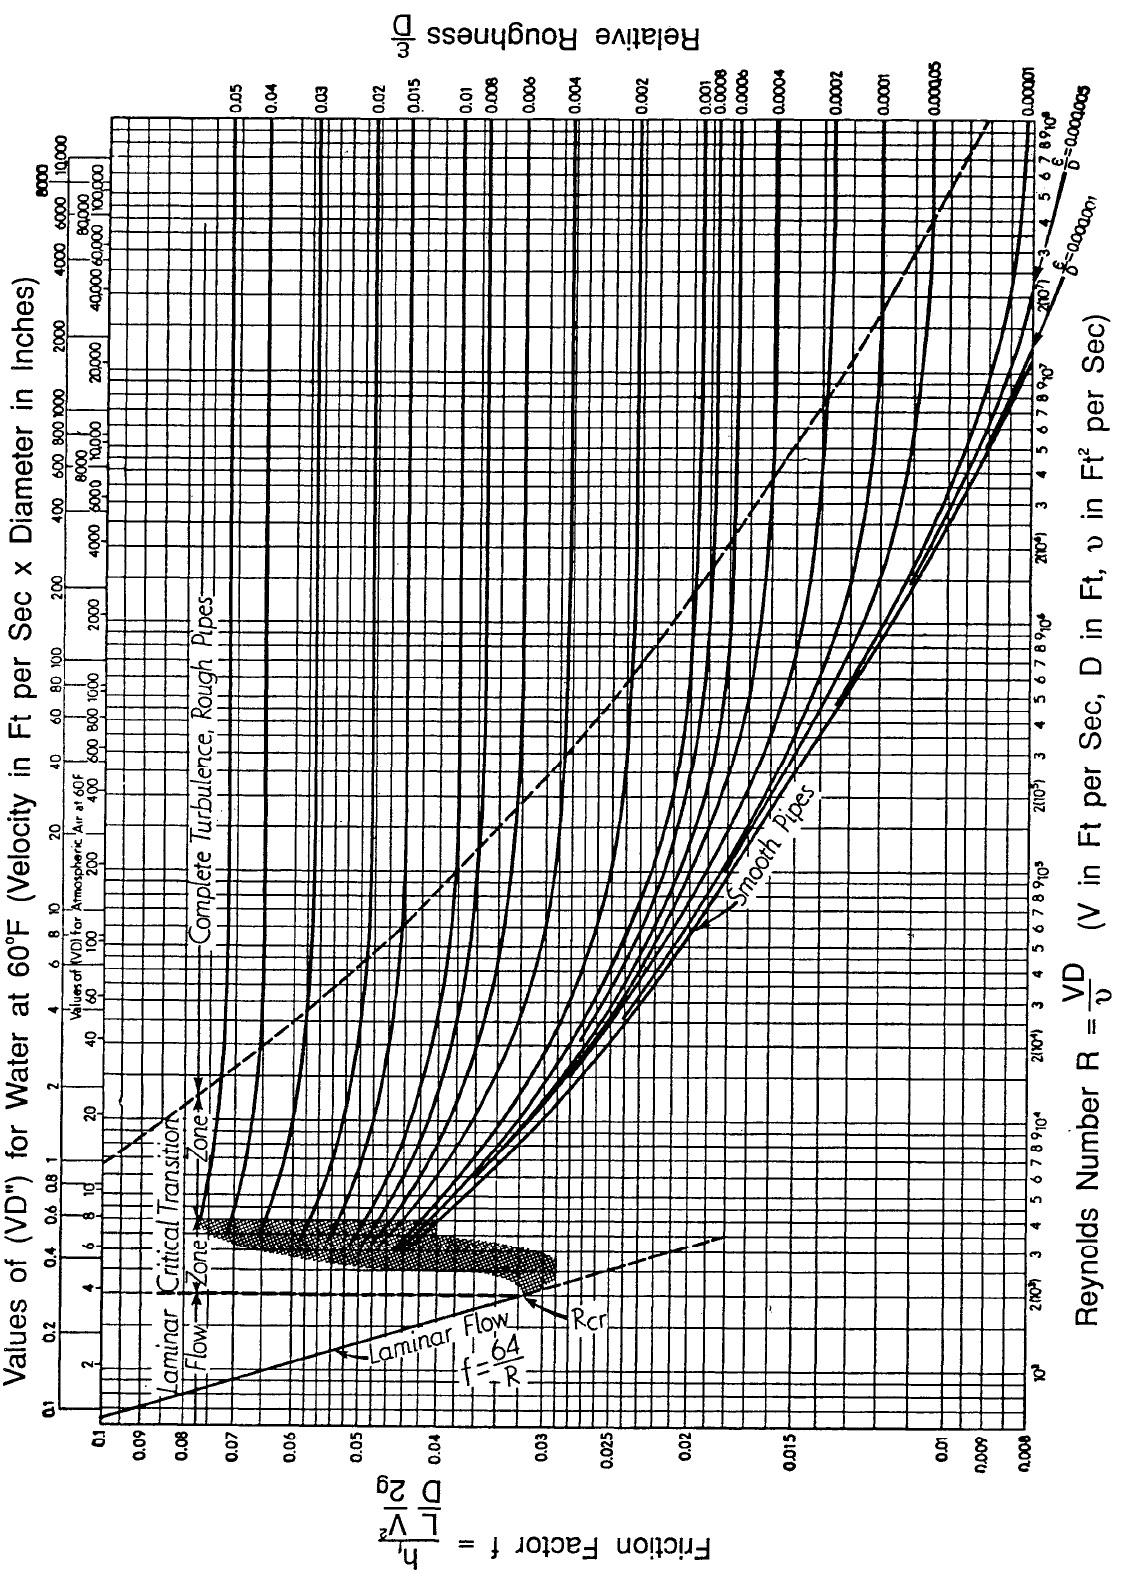 Figure A: Moody Chart